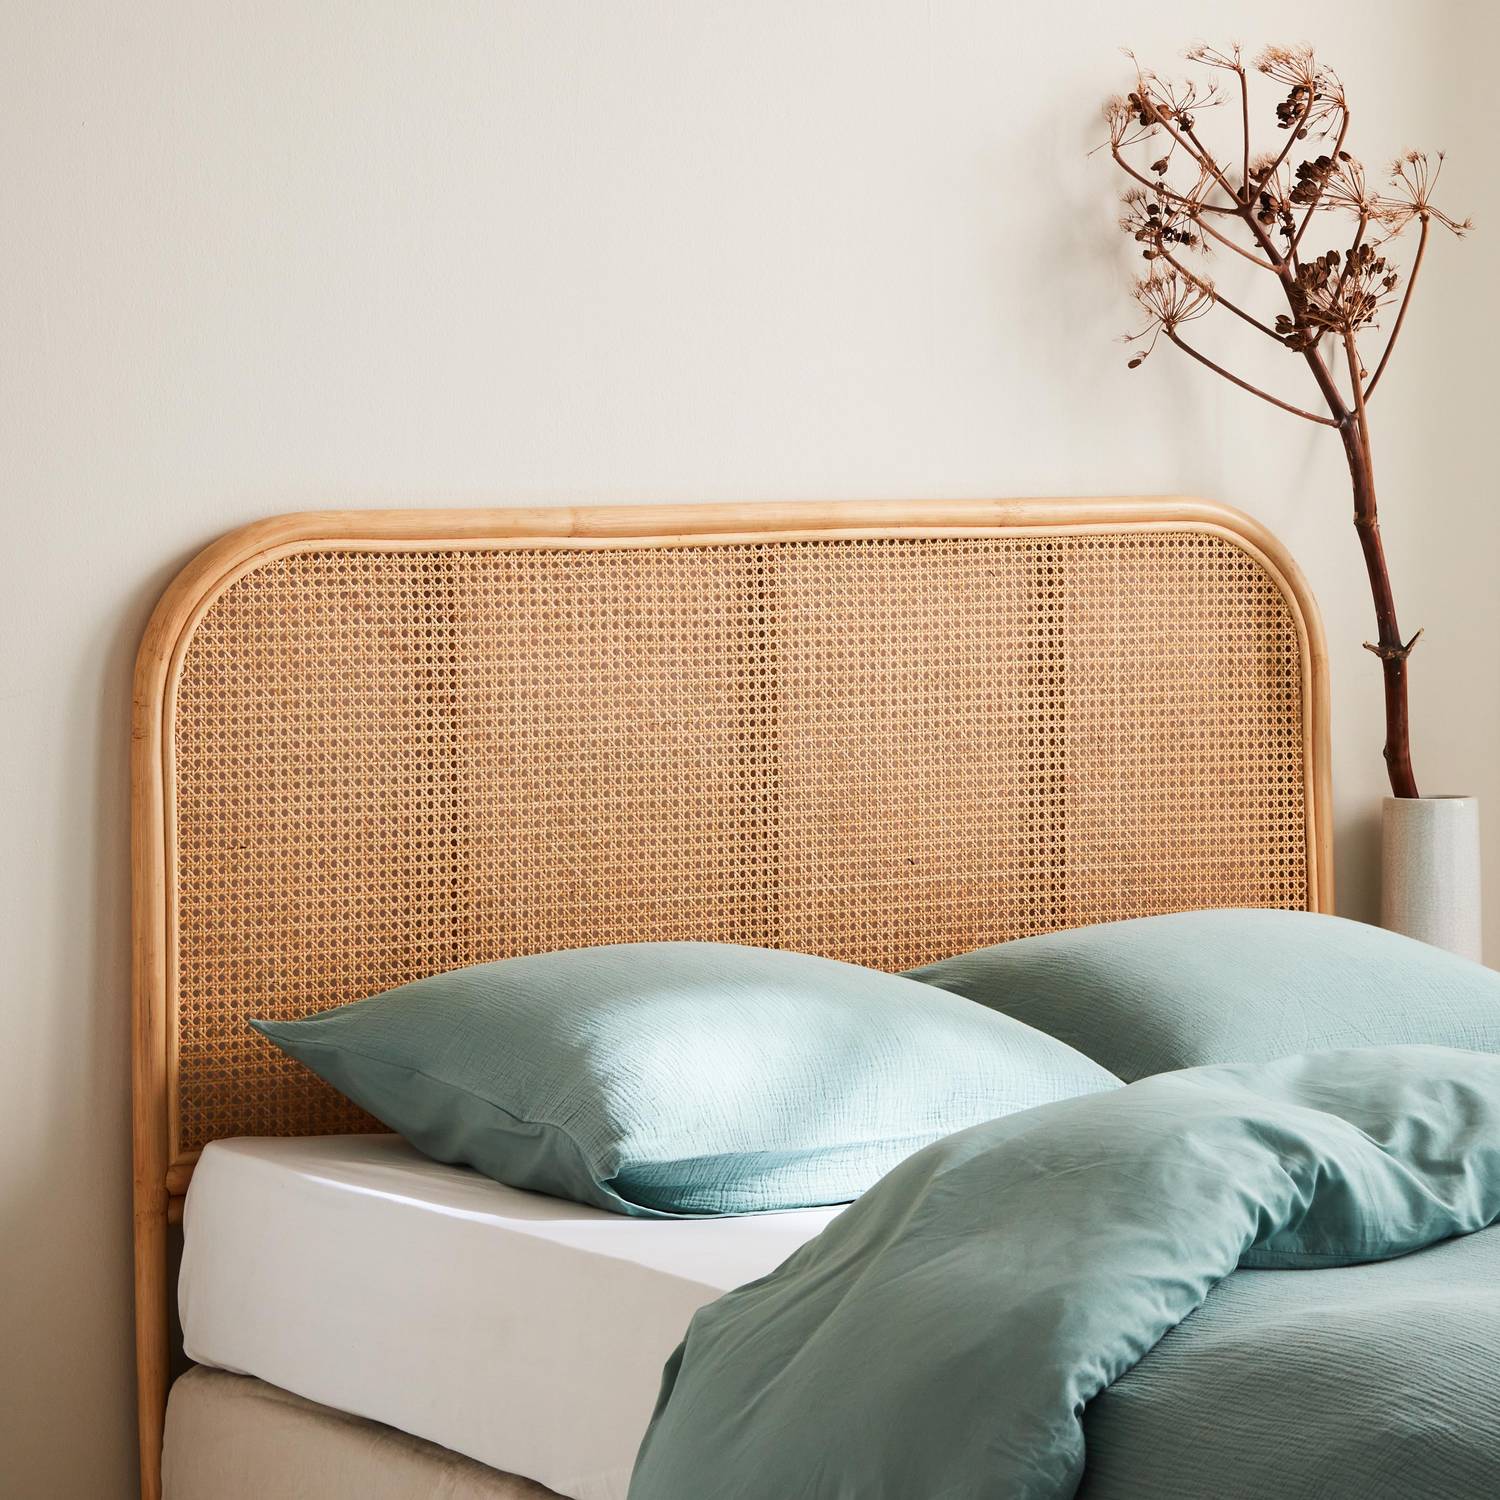 Kopfteil aus Rattan und Rohrgeflecht Natur passend für Betten mit einer Breite von 140 cm Photo1